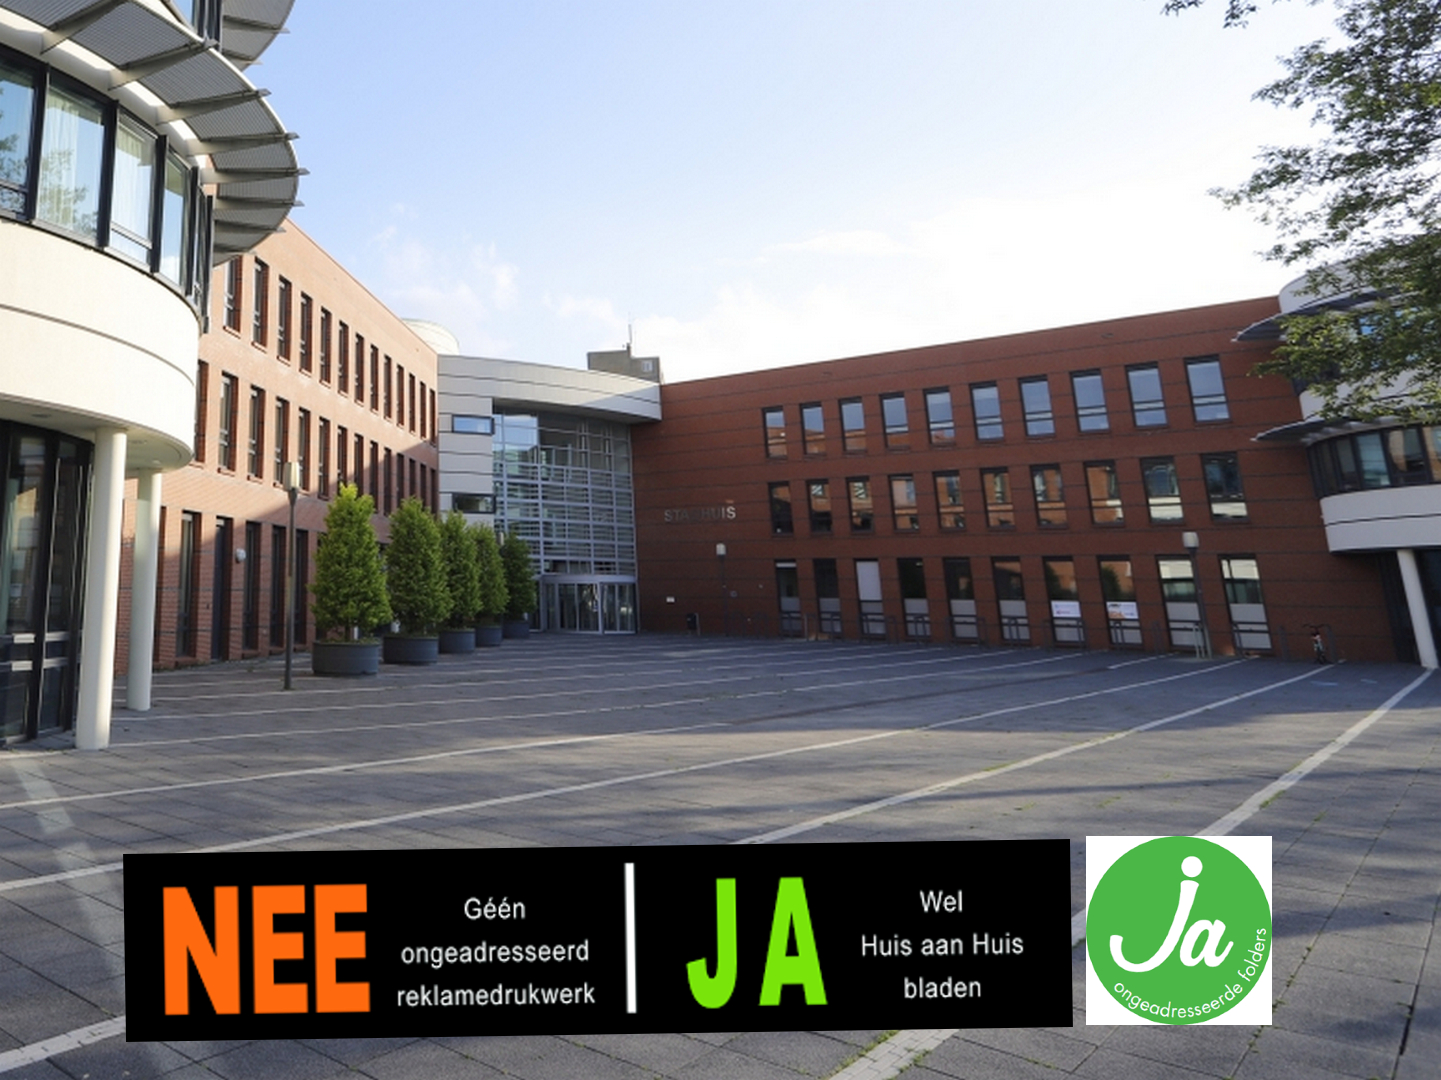 Ook in Kampen, de JA-sticker voor het ontvangen van ongeadresseerd drukwerk